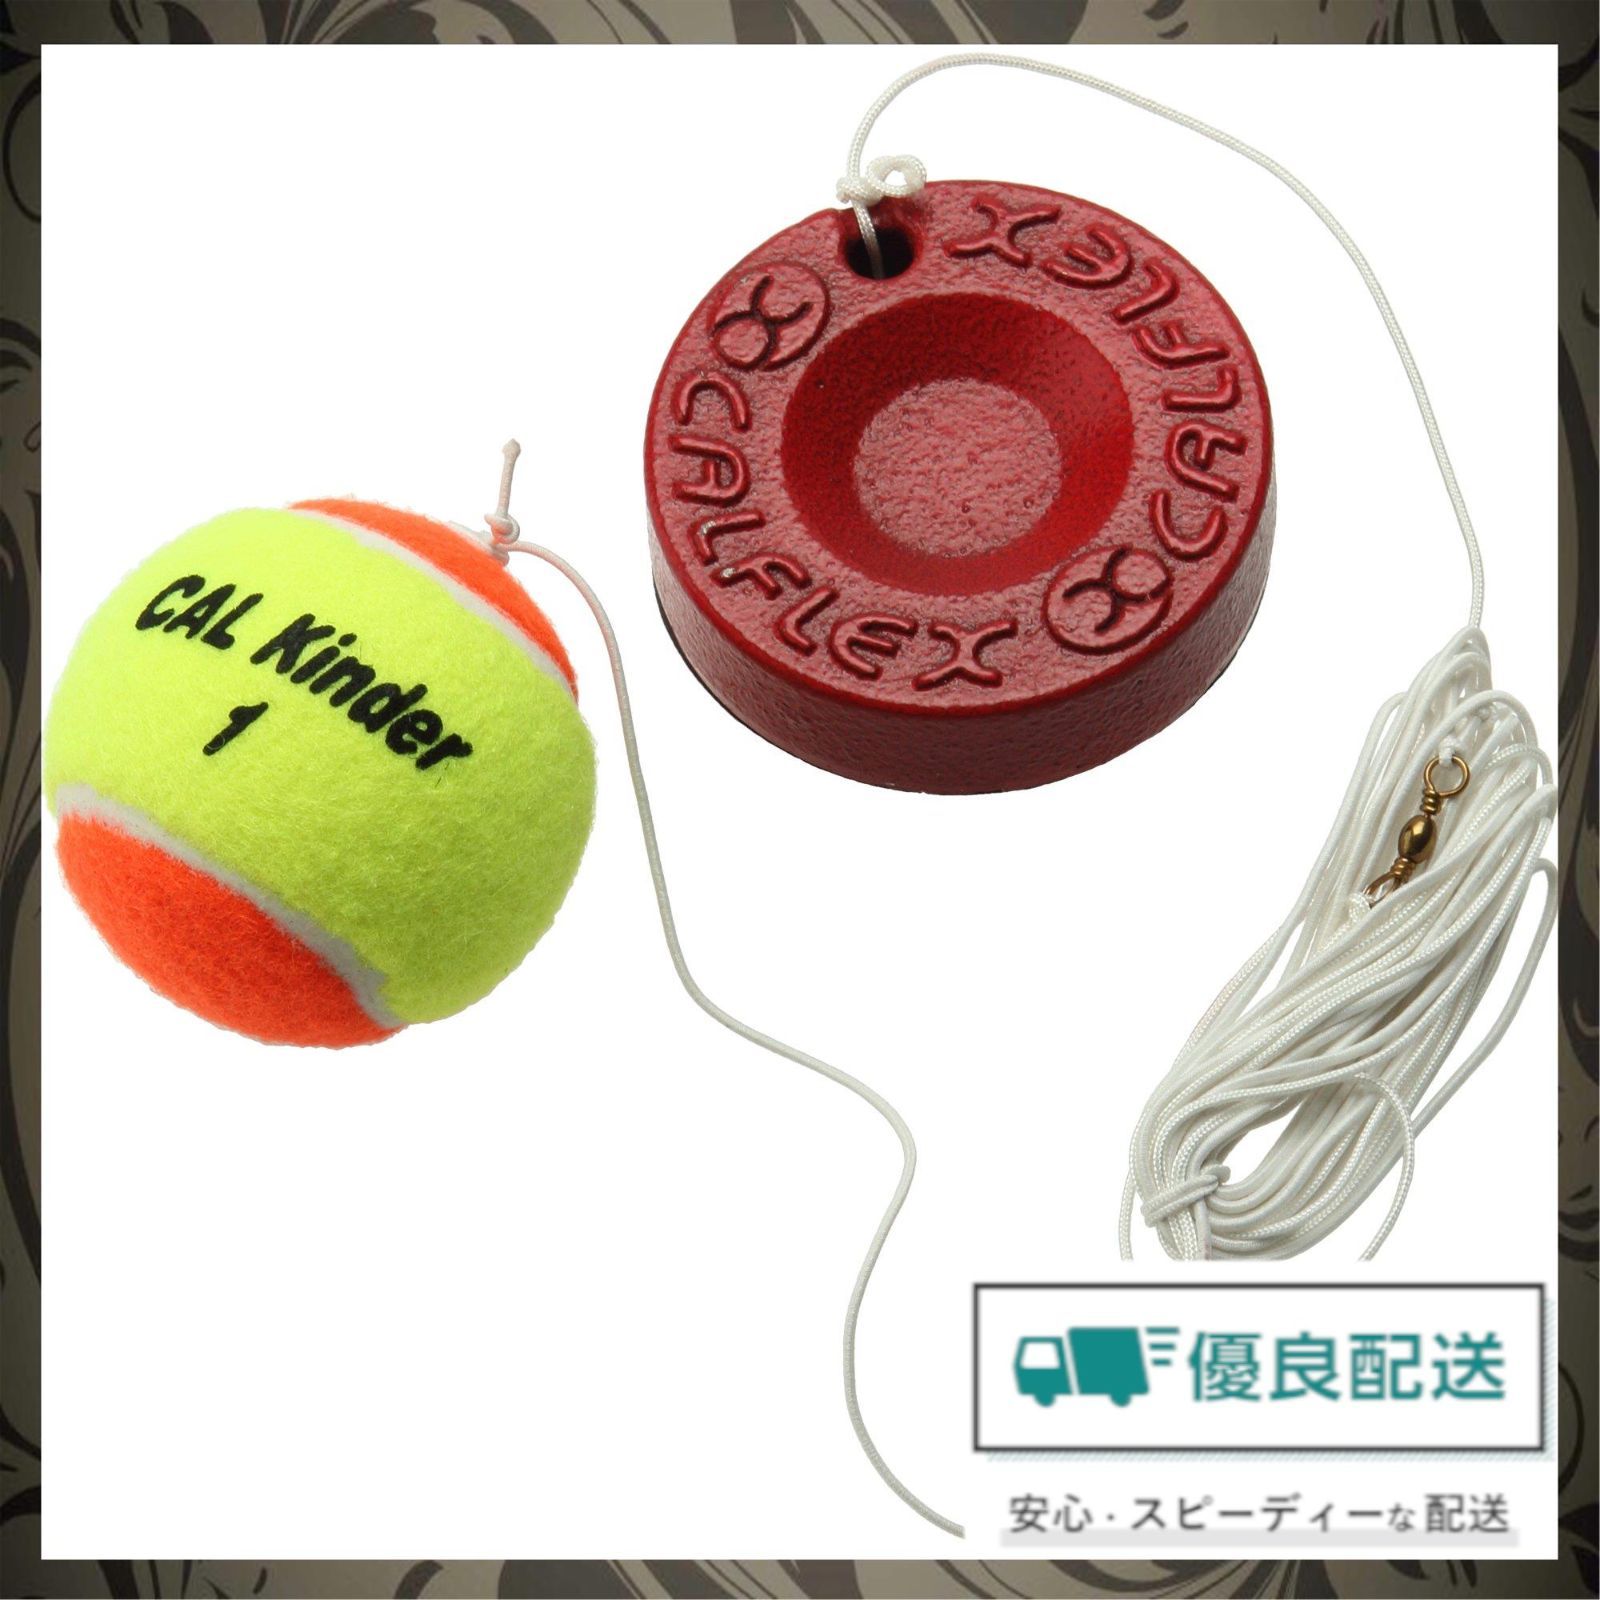 【人気商品】テニス ジュニア 硬式 CALFLEX(カルフレックス) テニストレーナー サクライ貿易(SAKURAI) TT-31